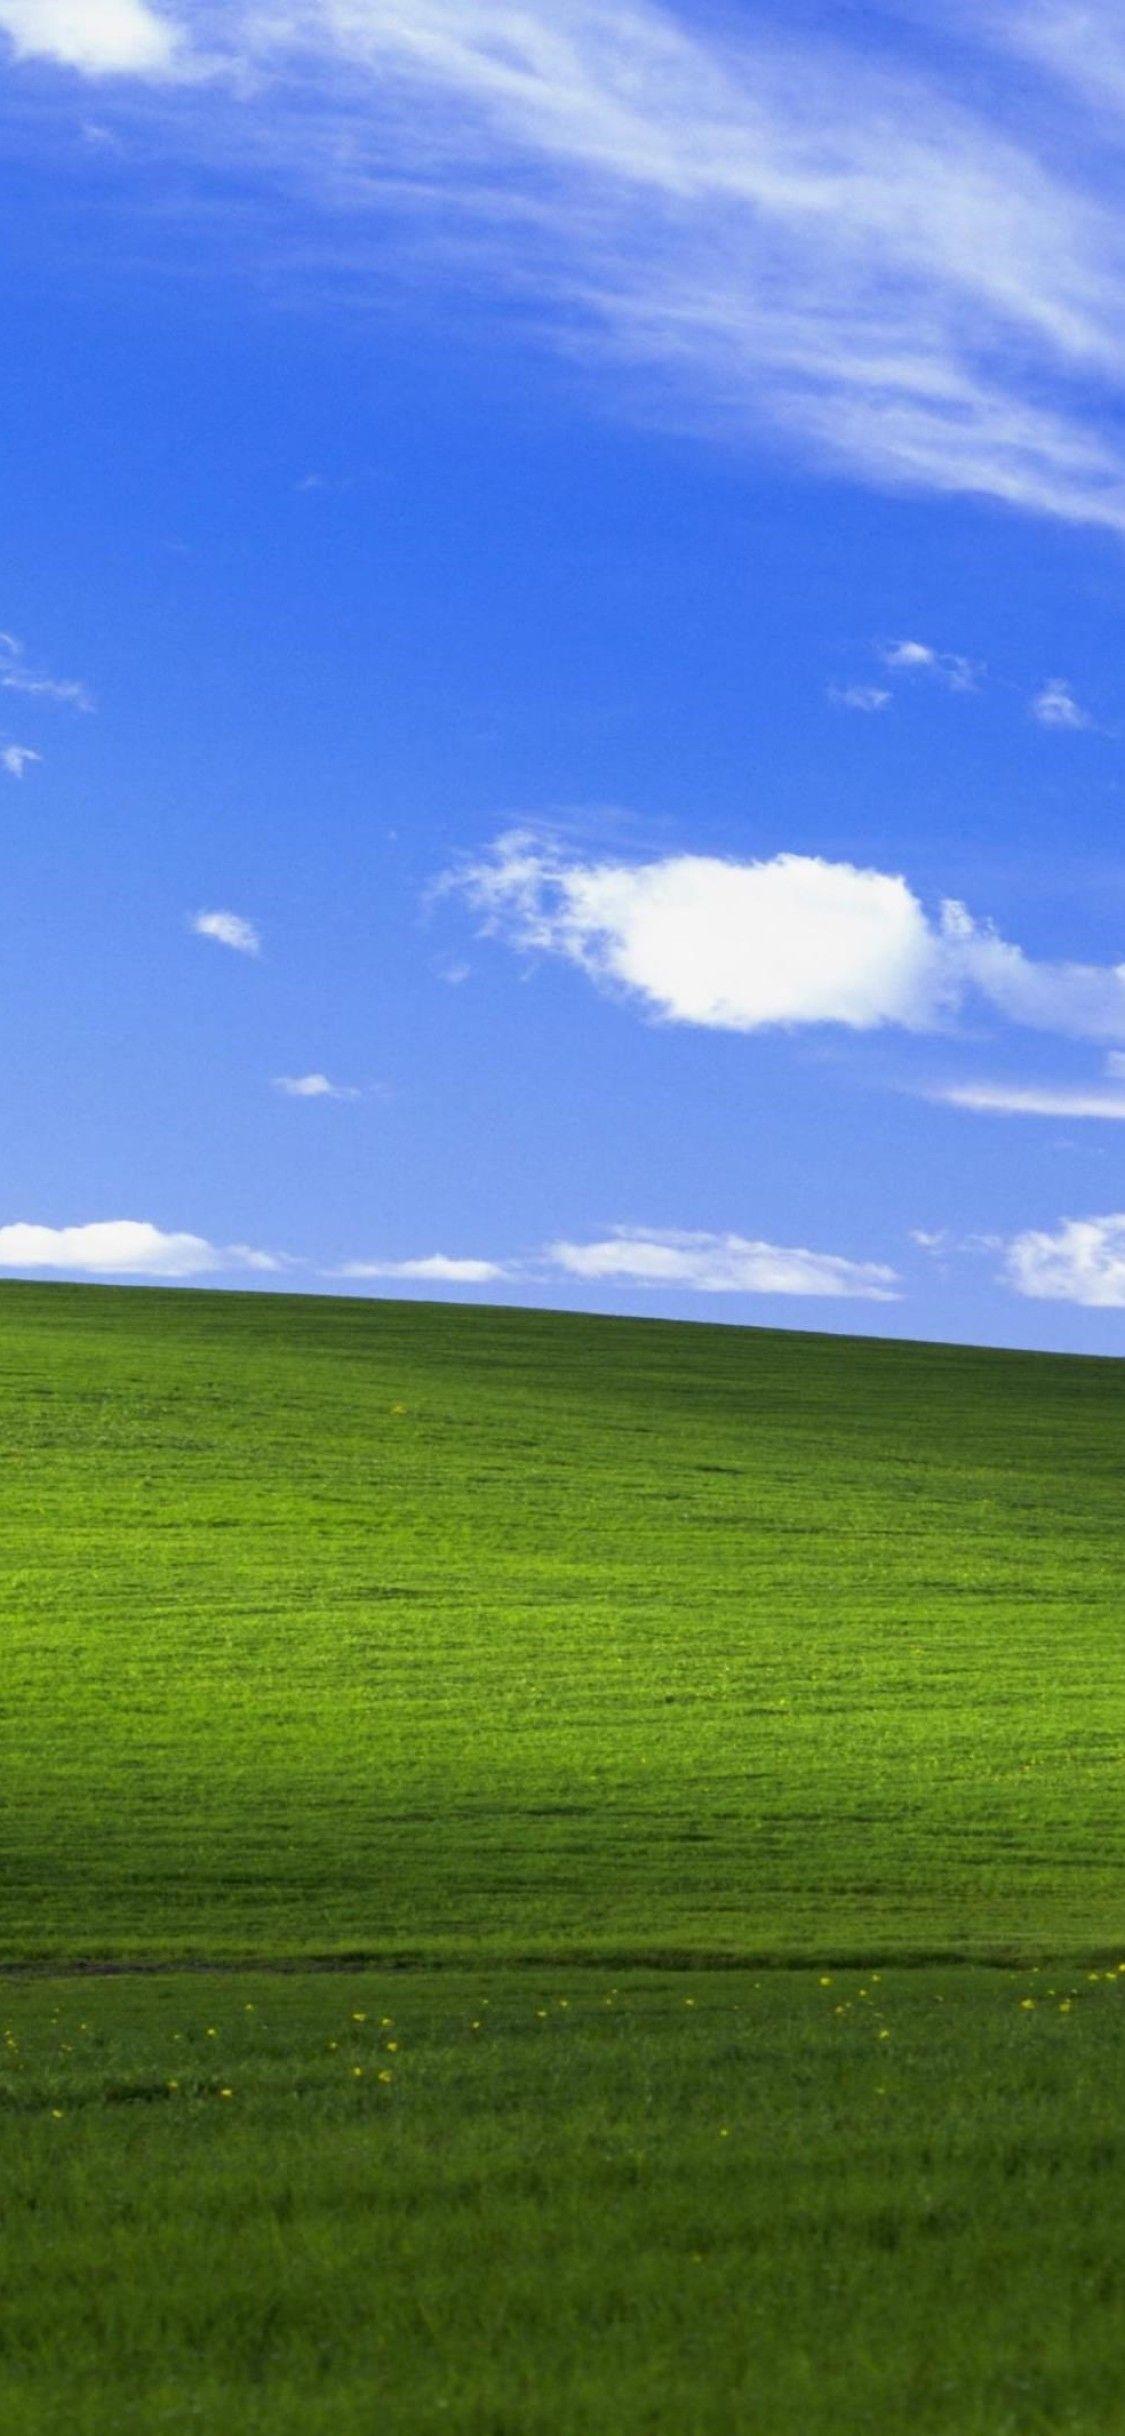 Tác giả ảnh nền Windows XP ước nhận 10 triệu USD tiền bản quyền  VnExpress  Số hóa